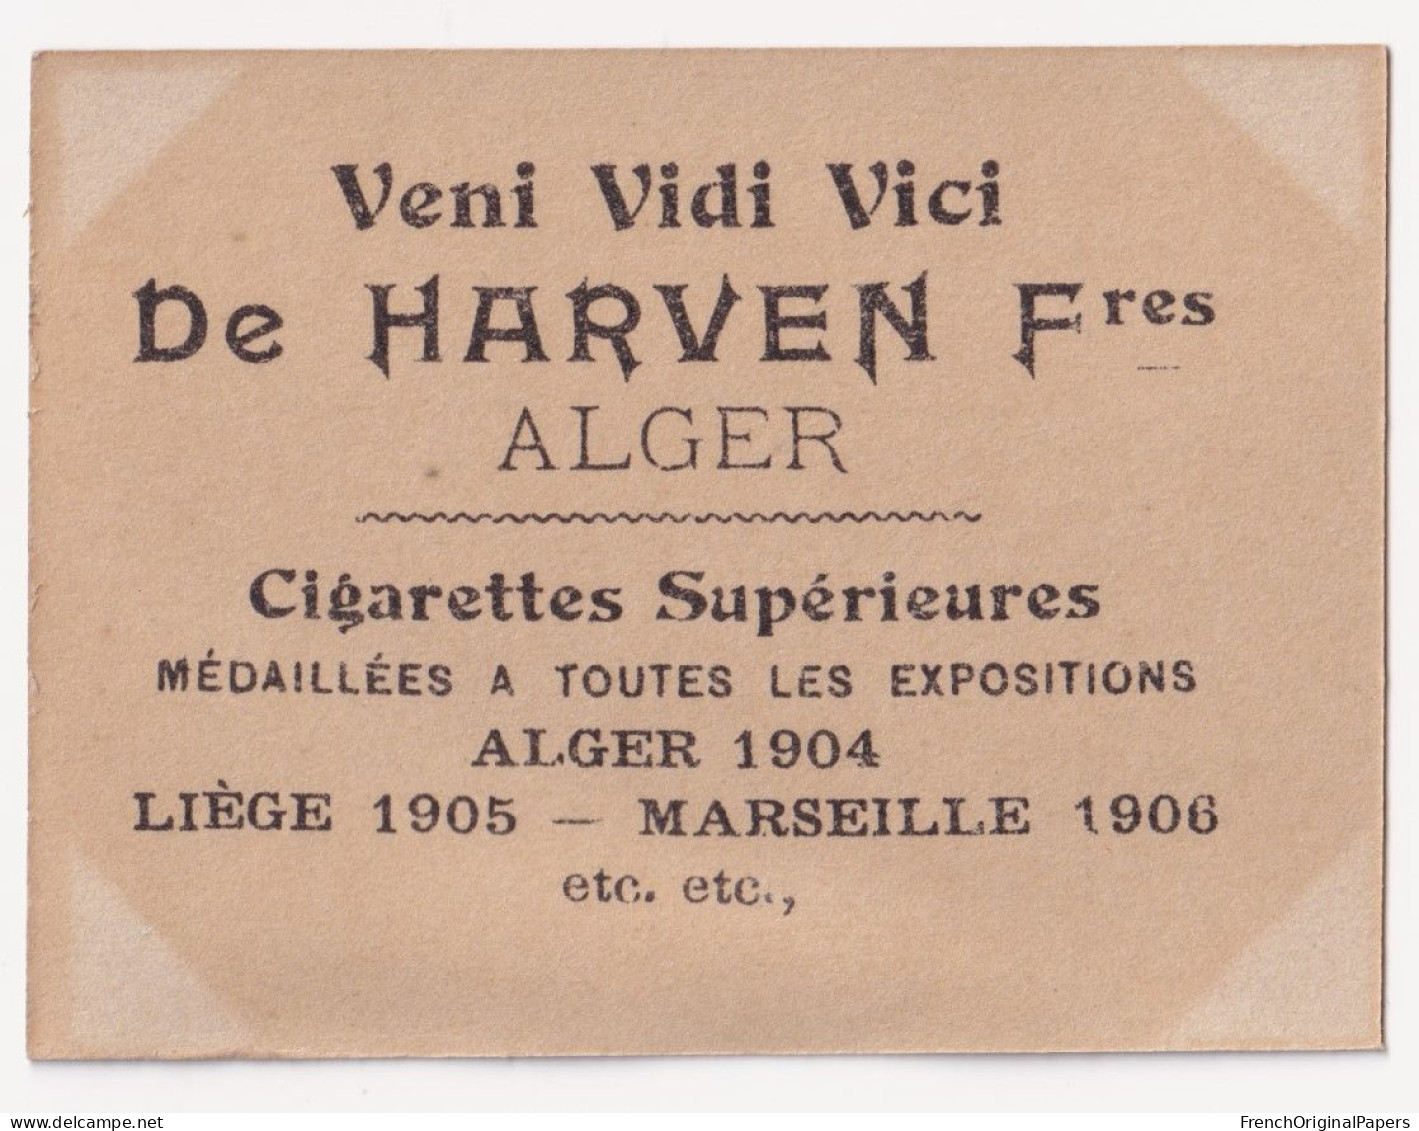 Duhamel -Cigarettes De Harven 1910 Photo Femme Sexy Lady Pin-up Woman Nue Nude Nu Seins Nus Vintage Alger Artiste A62-11 - Autres Marques